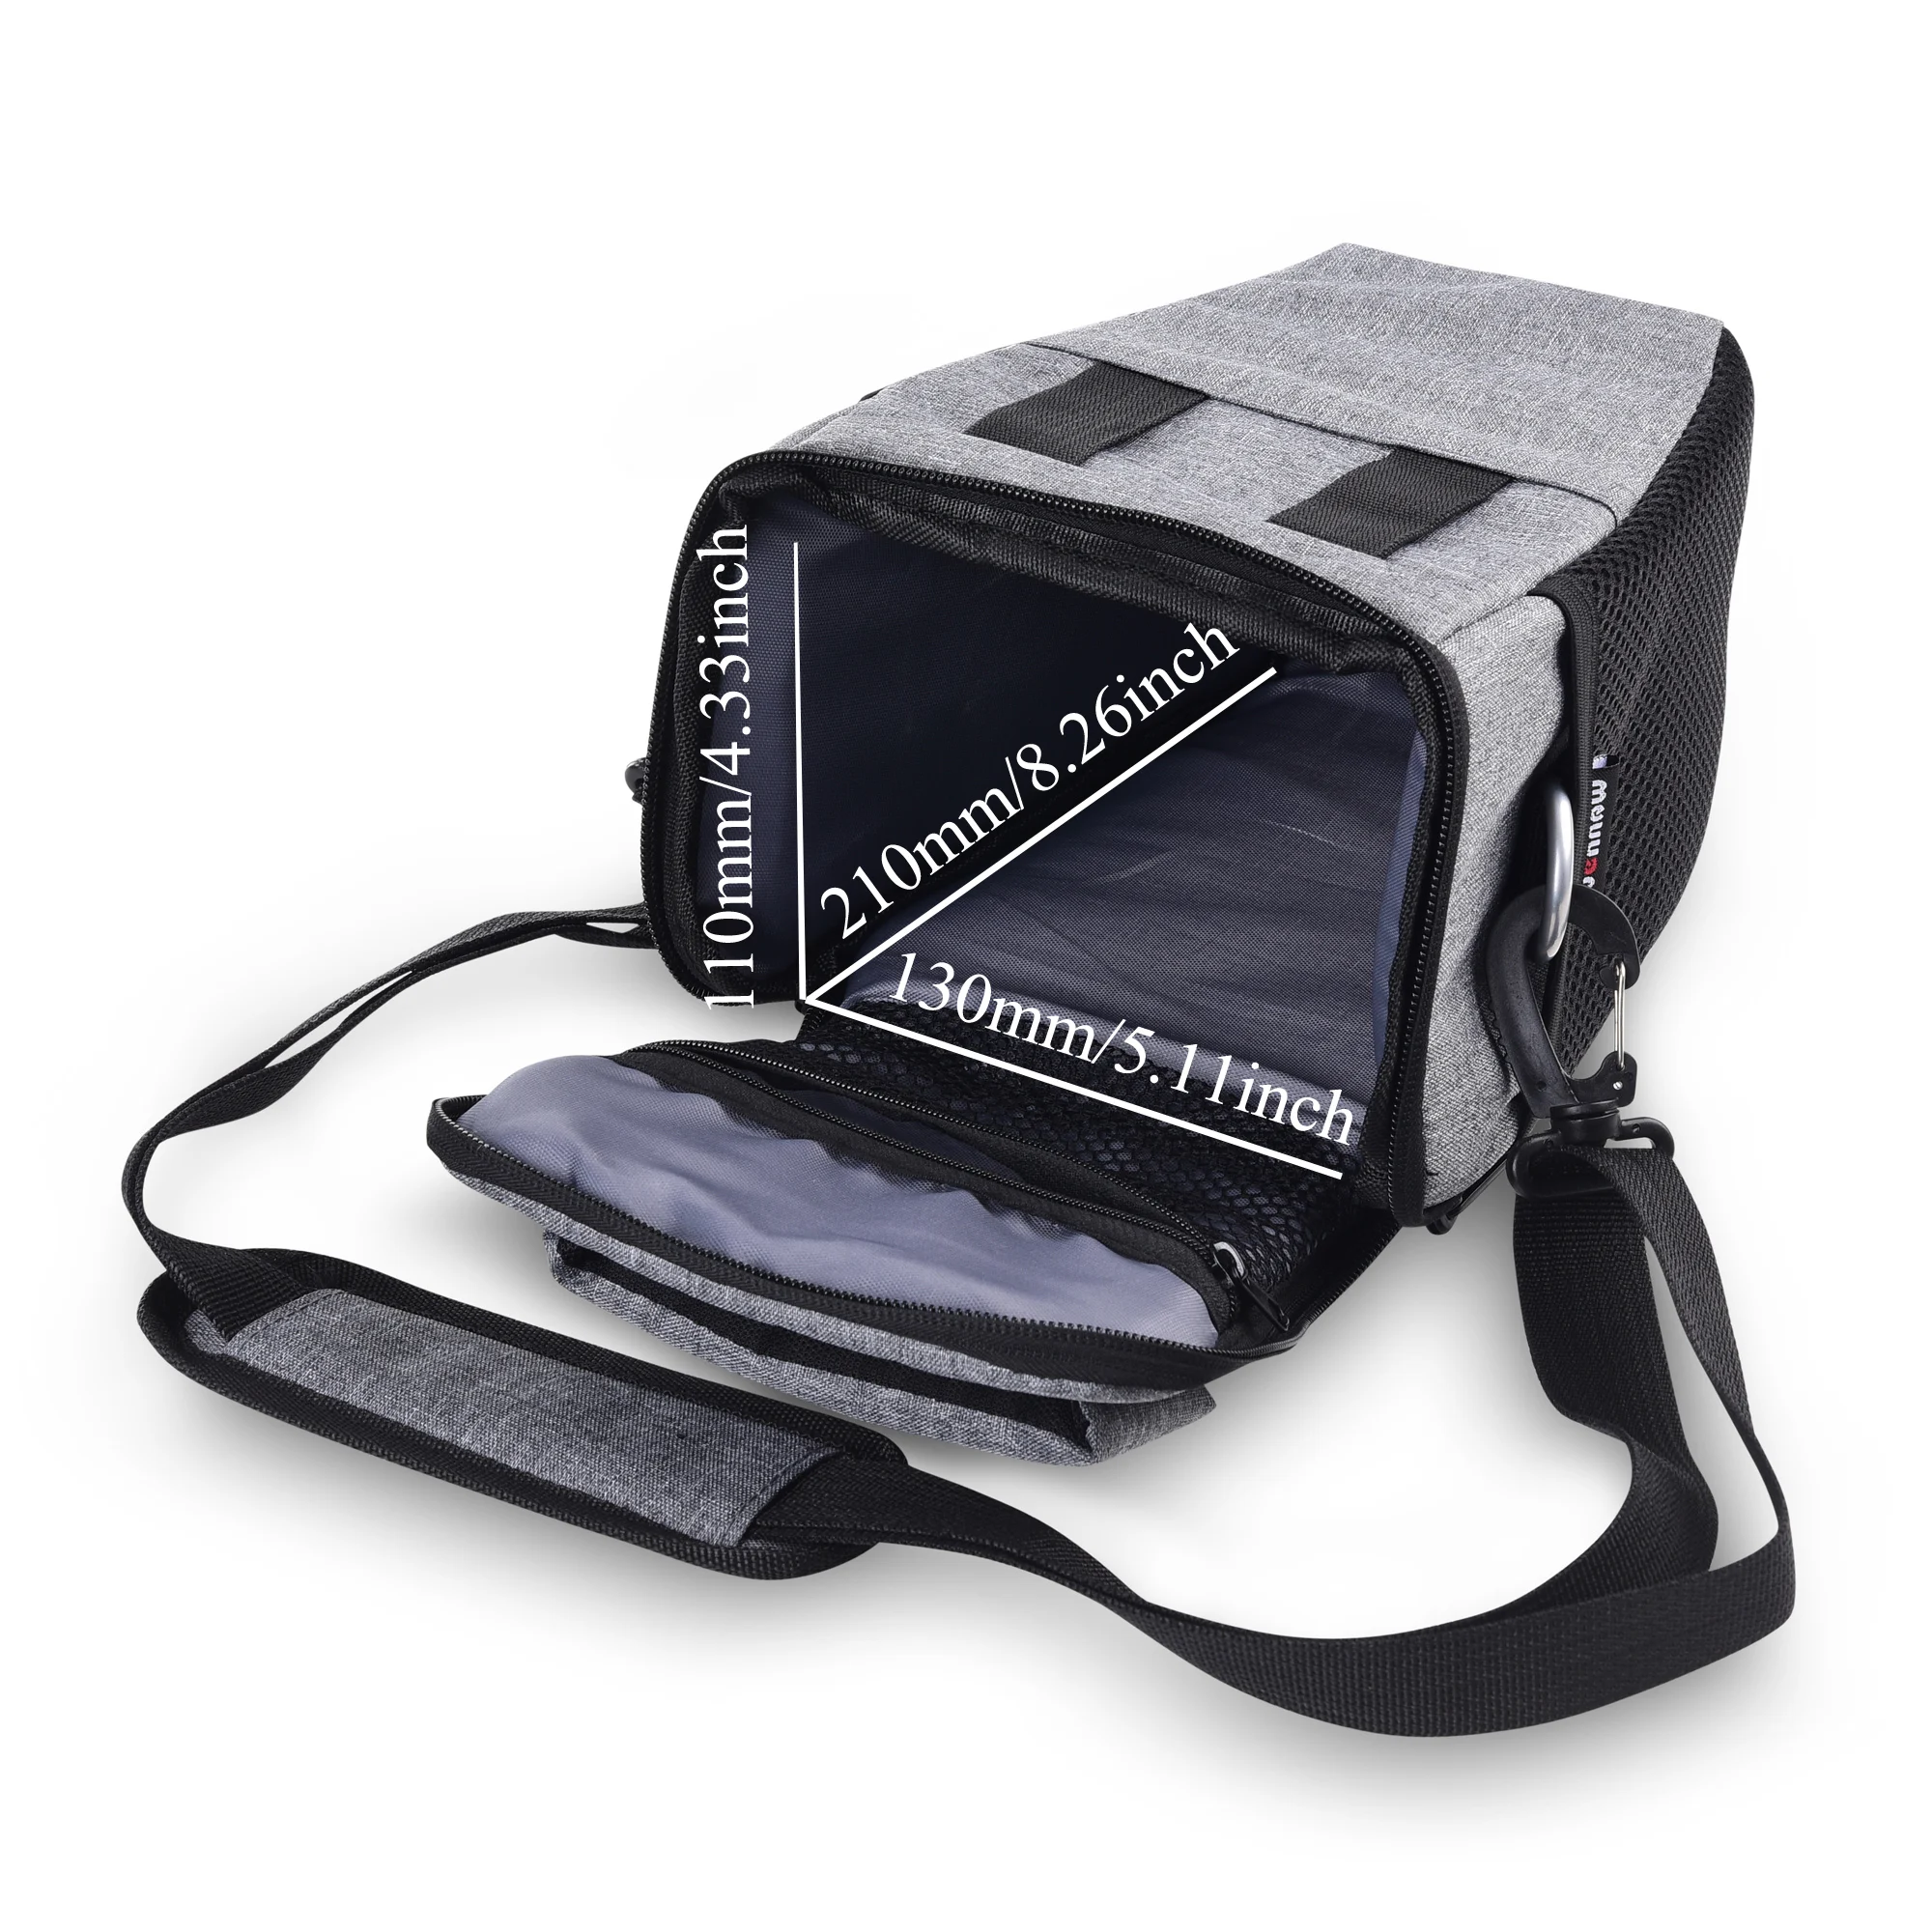 DSLR Камера сумка чехол для цифровых зеркальных фотокамер Nikon D3400 D3500 D5600 D7500 P900 P900S для Canon 1100D 200D 750D 80D T6 объектив сумка через плечо